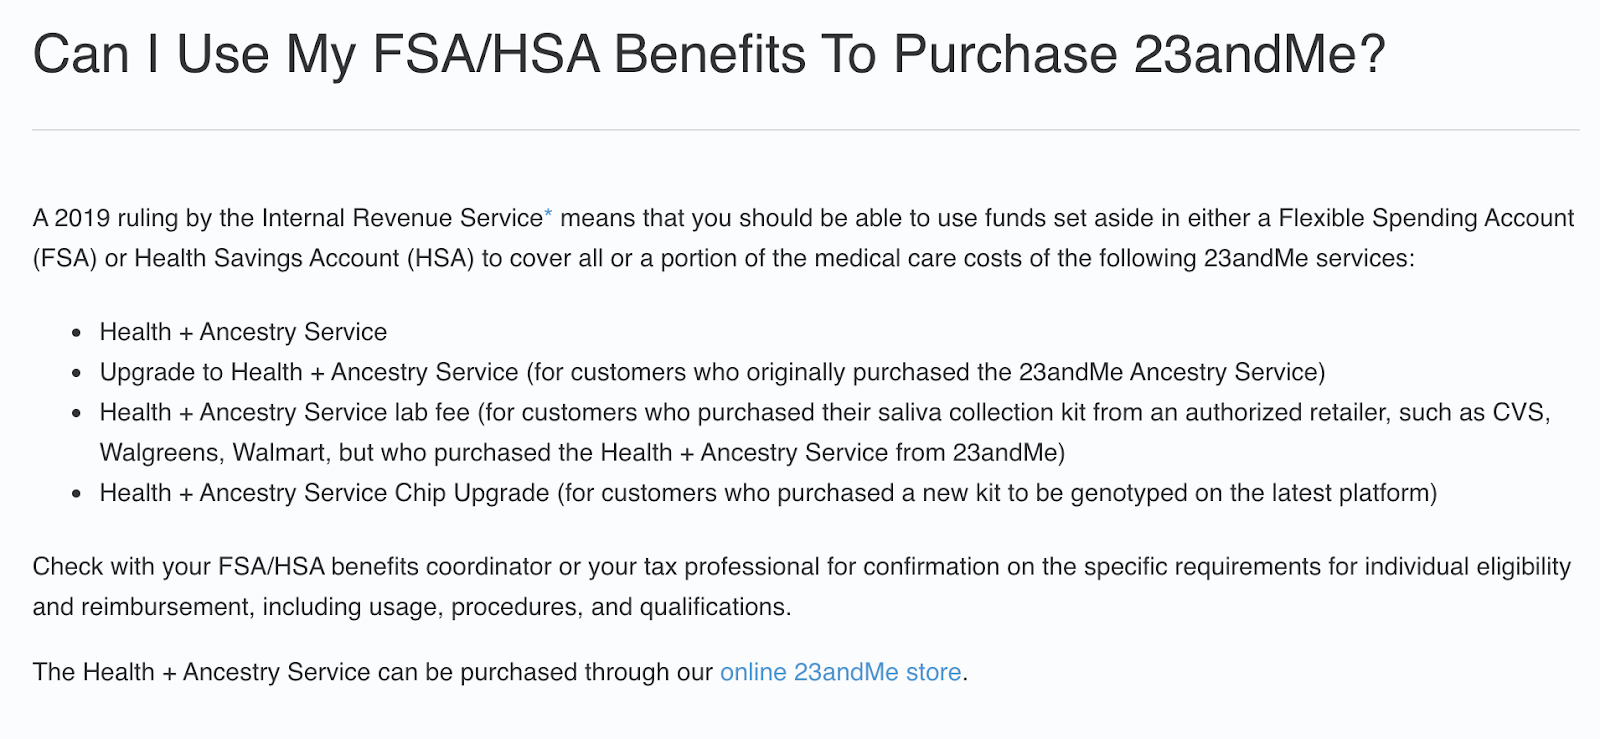 شرح على موقع 23andMe حول كيفية استخدام FSA / HSA.